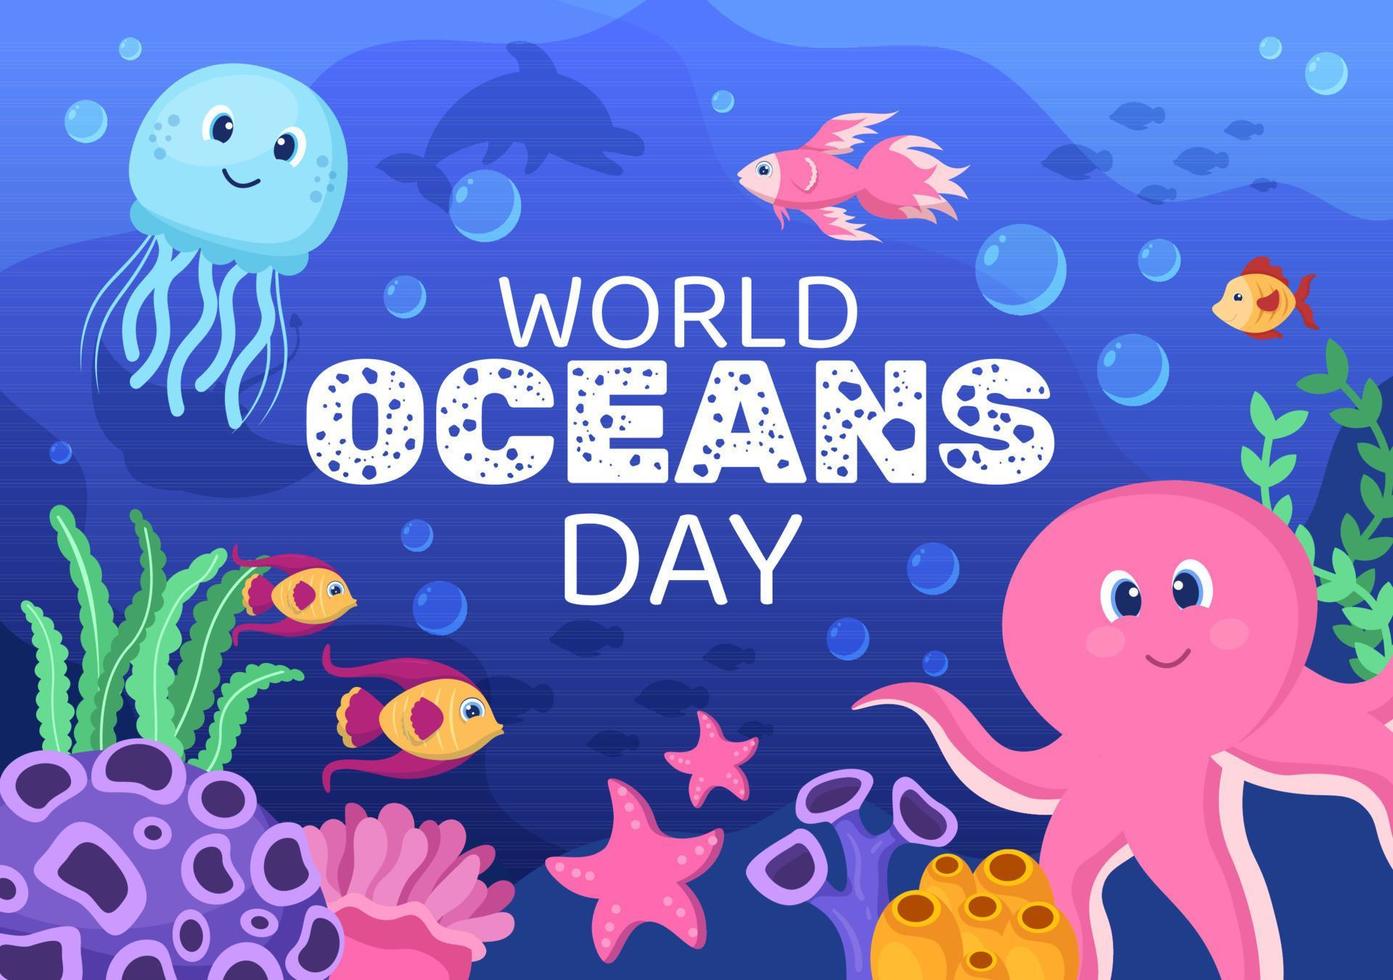 världshavets dag tecknad illustration med undervattenslandskap, olika fiskdjur, koraller och marina växter dedikerade till att skydda eller bevara vektor